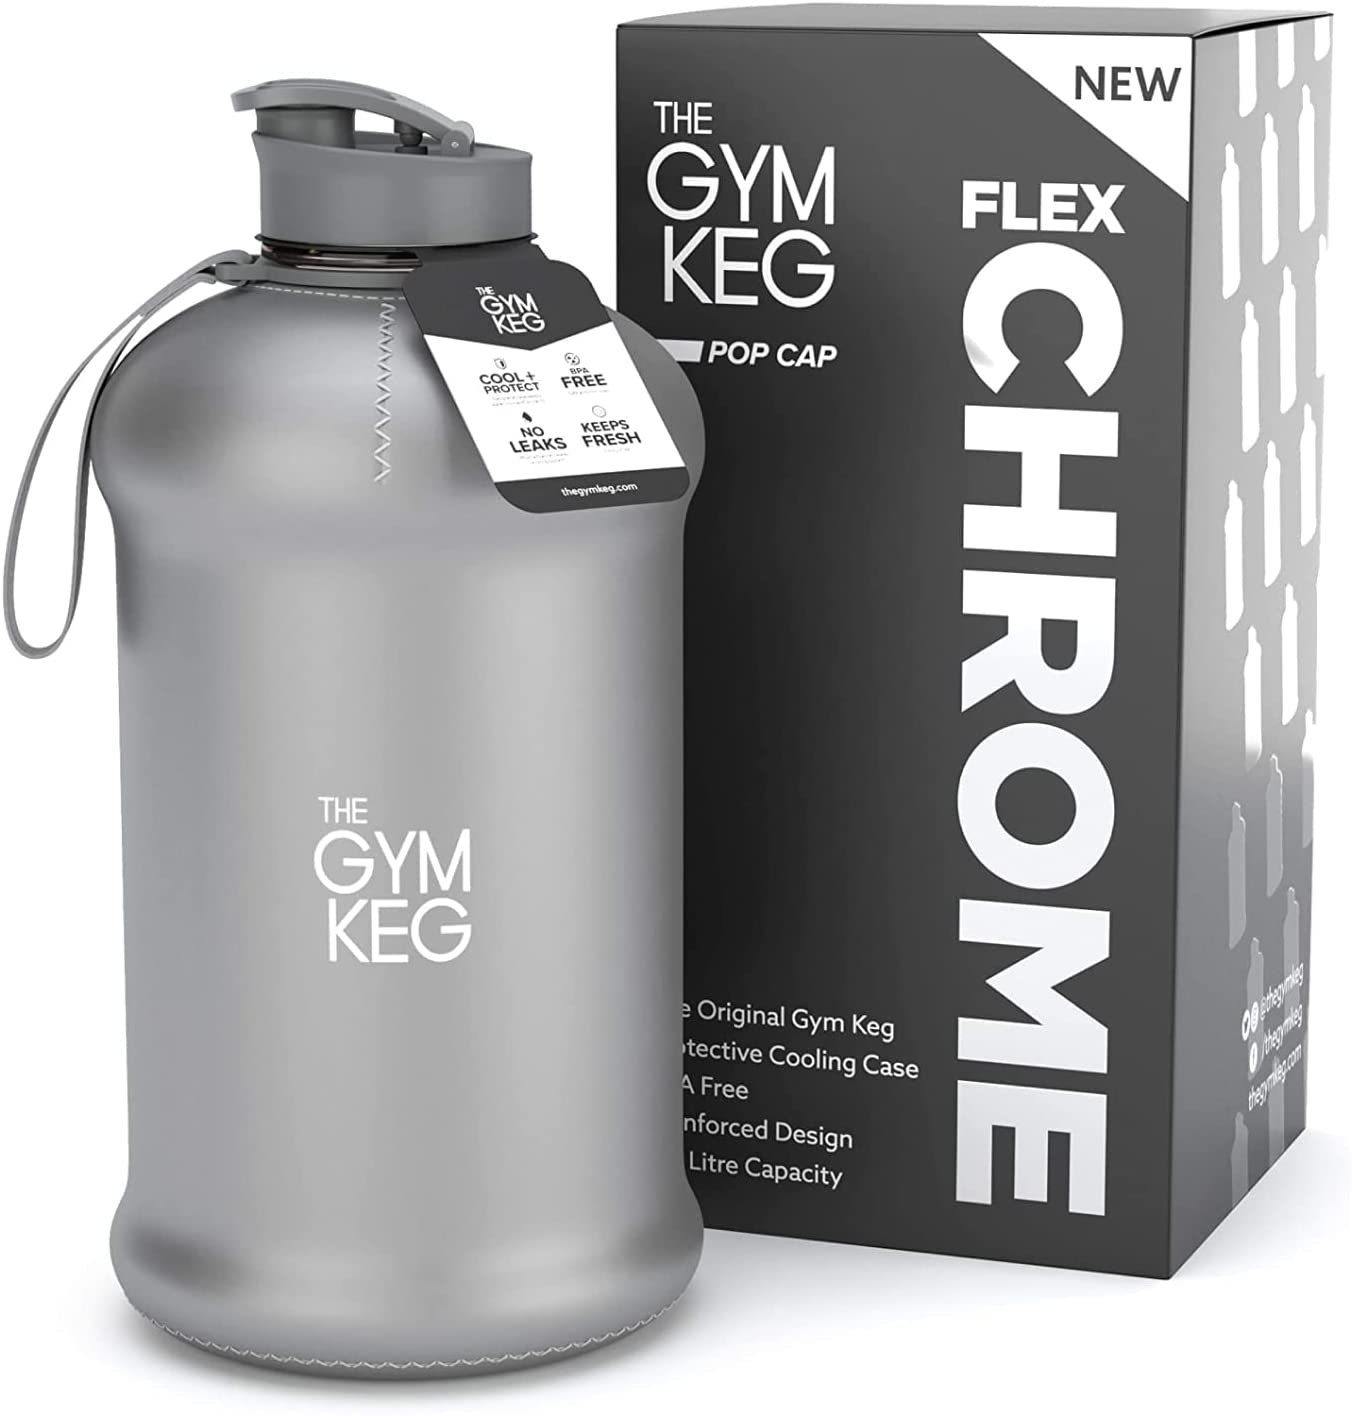 Grey Gym Sleeve Trinkflasche mit 2.2 Neoprene Wiederverwendbar, Keg Nardo und Liter The Gym Griff, 2.2L Trinkflasche